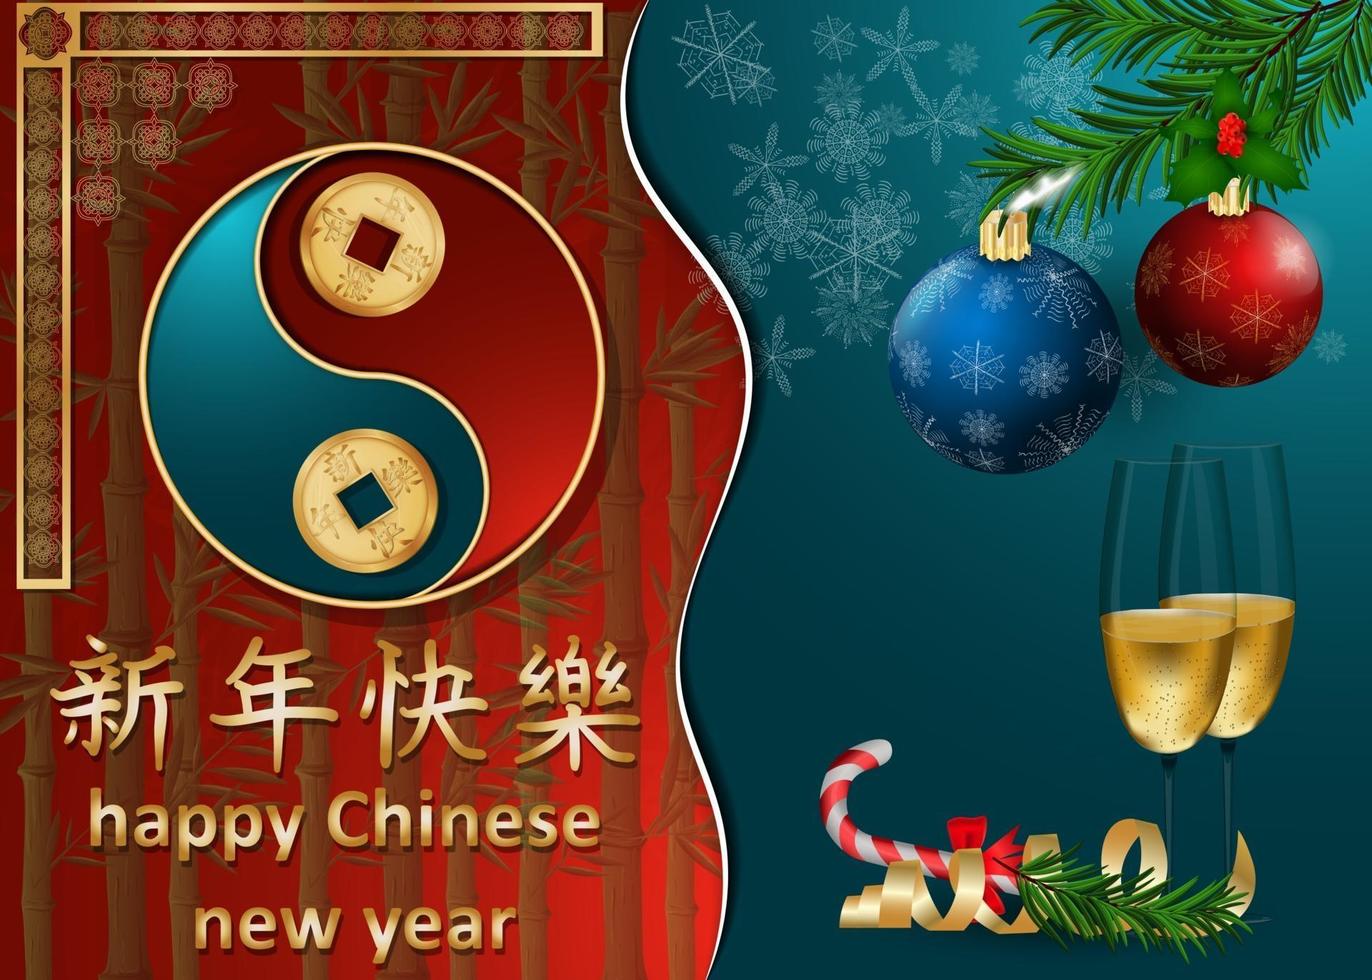 design de cartão de felicitações de ano novo chinês e europeu vetor